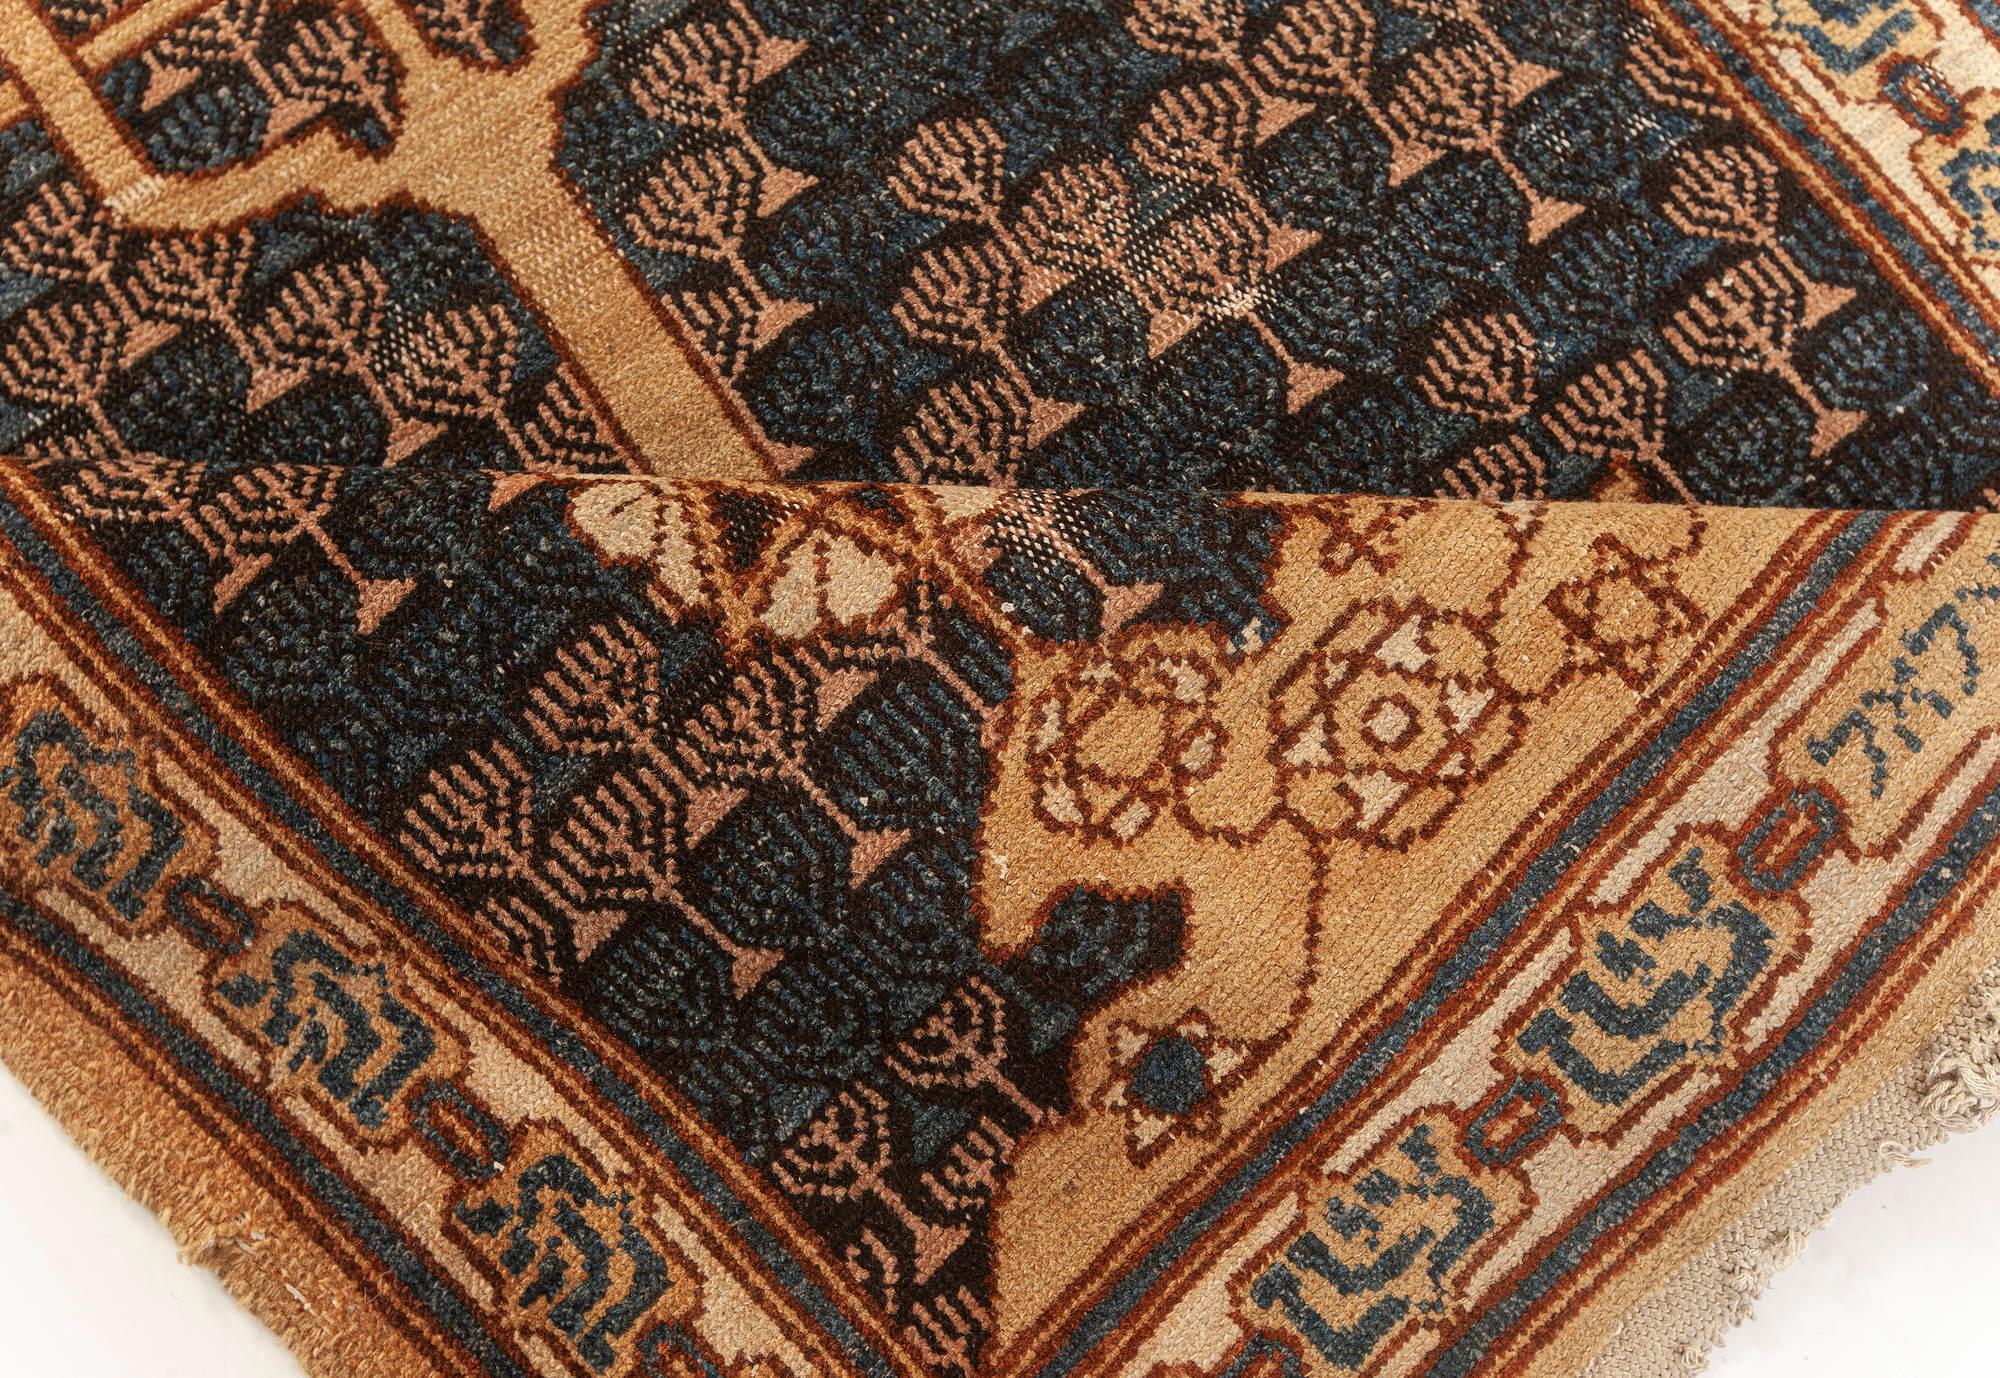 Palestinian Doris Leslie Blau Collection Antique Bezalel Rug